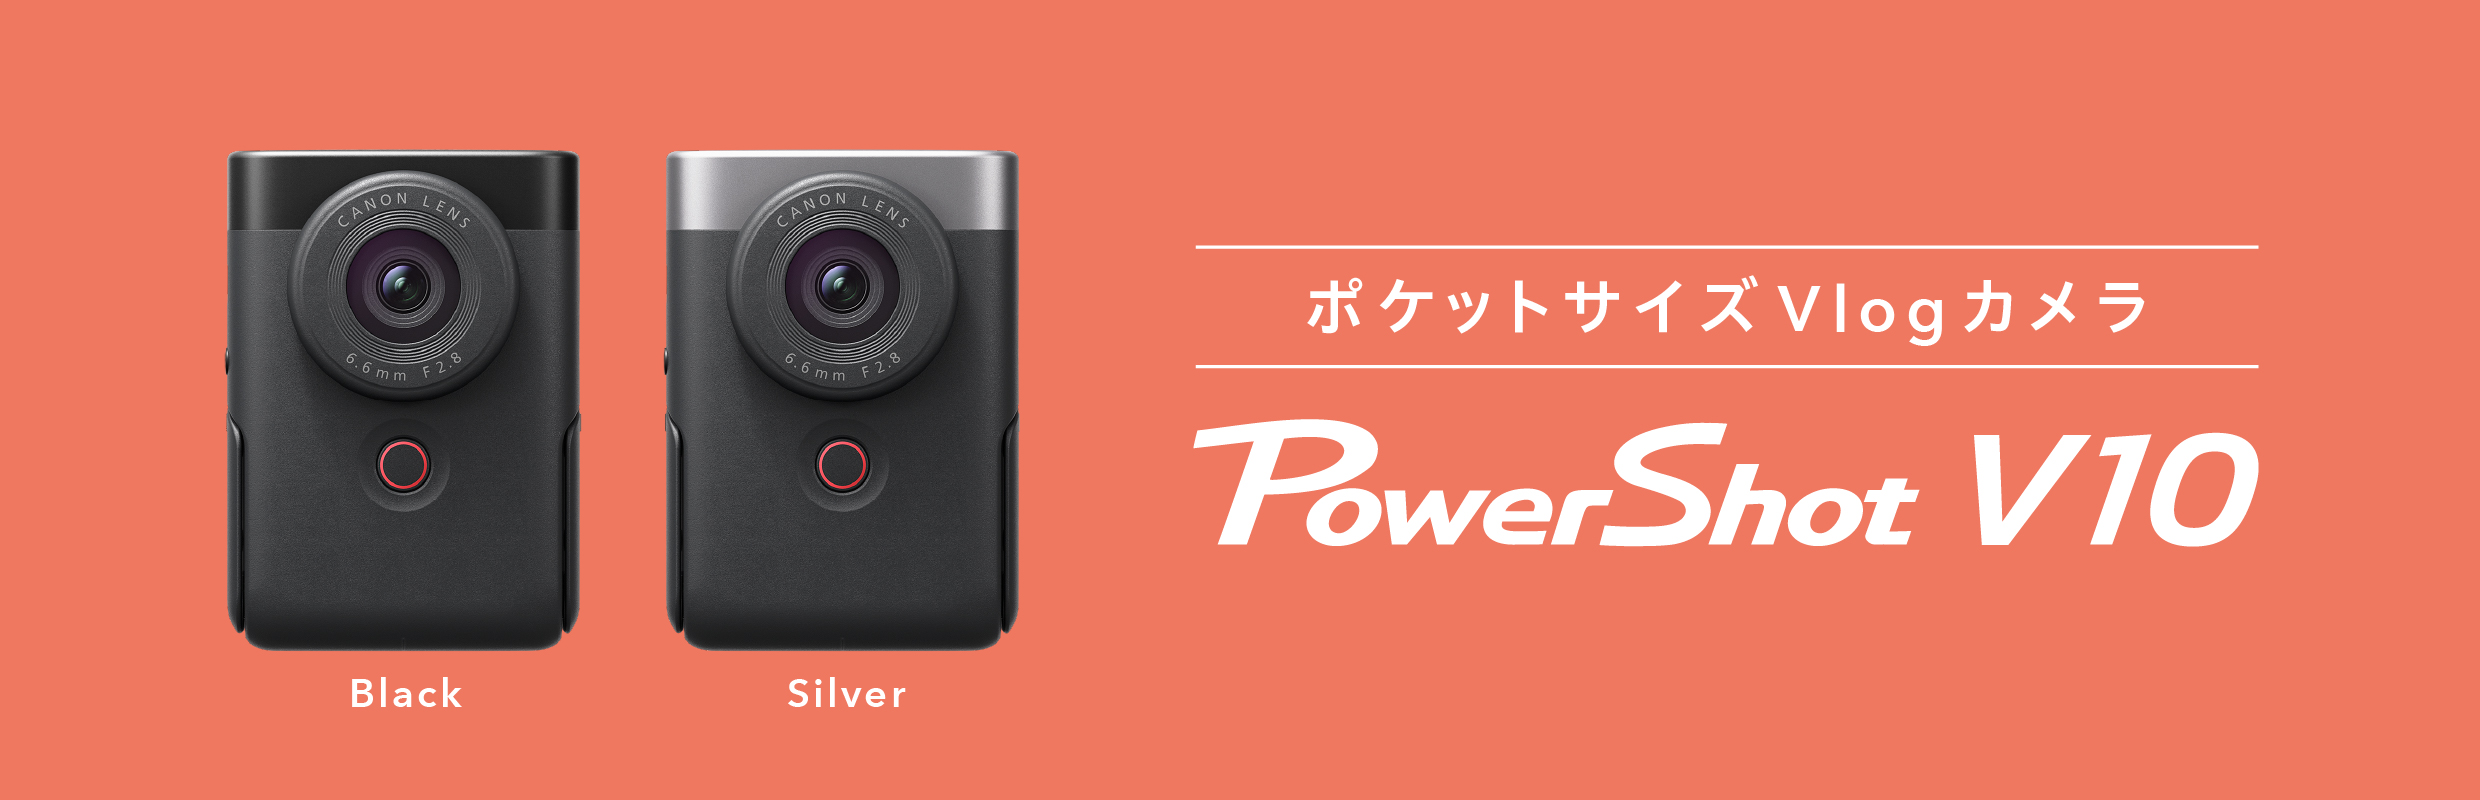 ポケットサイズVlogカメラ PowerShot V10 詳しくはこちら